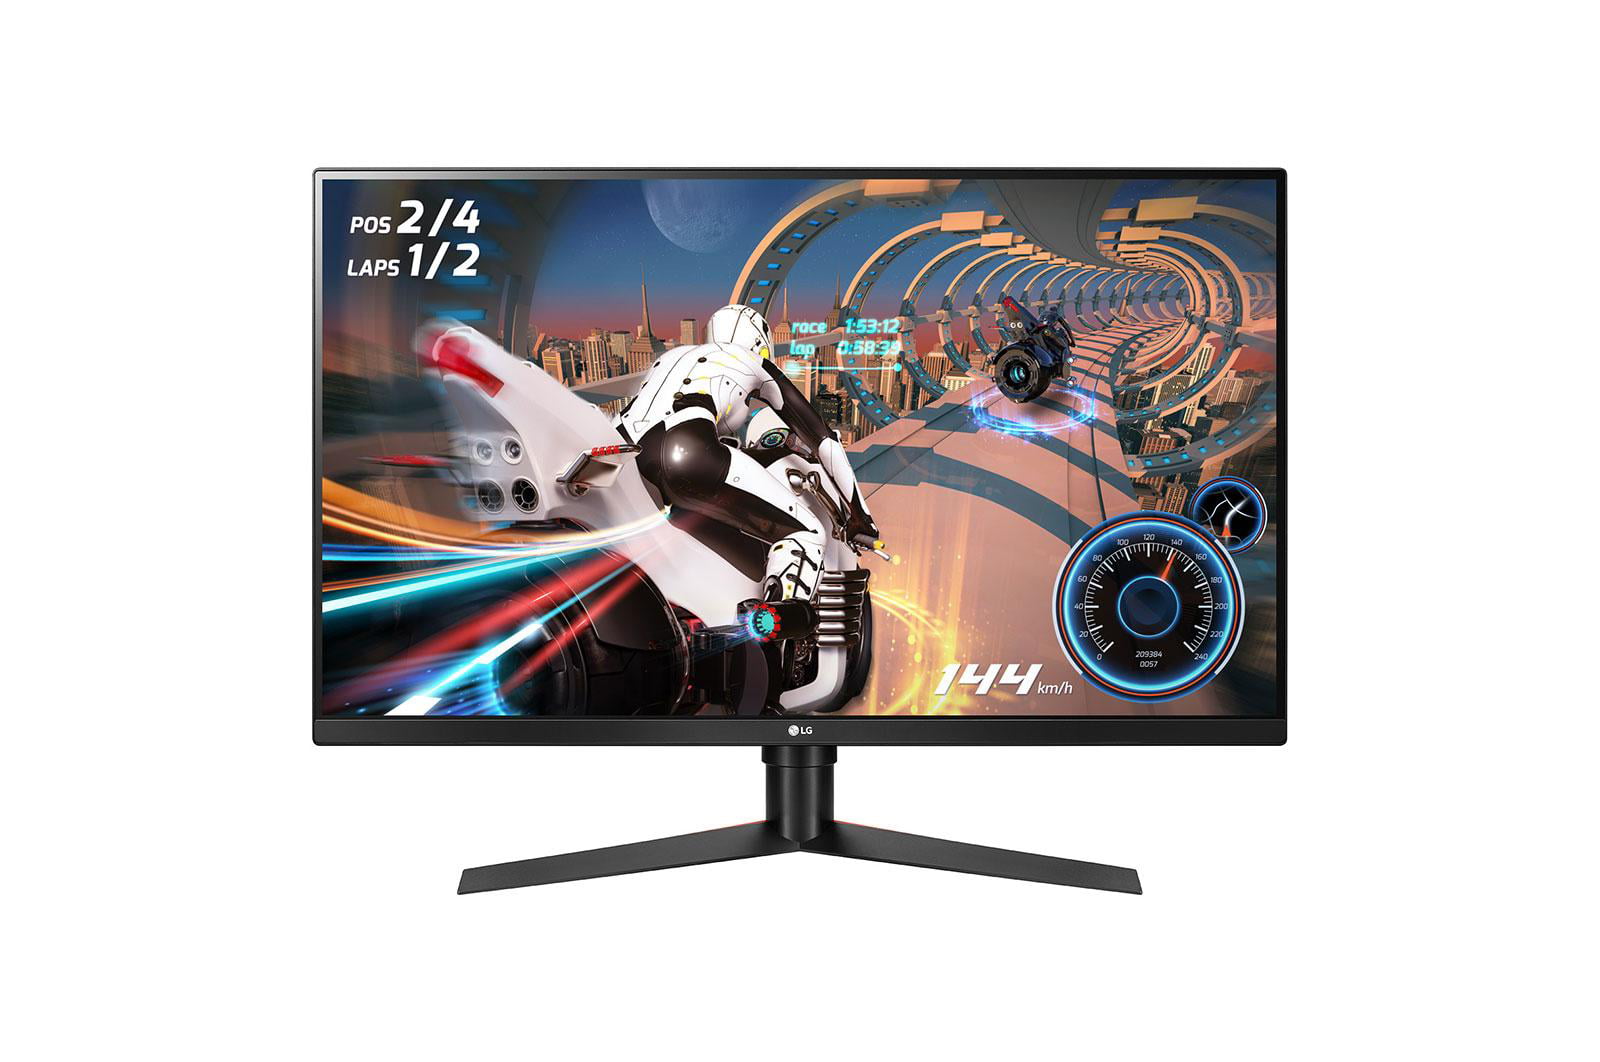 lg-32-inch-ultragear-qhd-gaming-monitor-with-g-sync-32gk650g-b